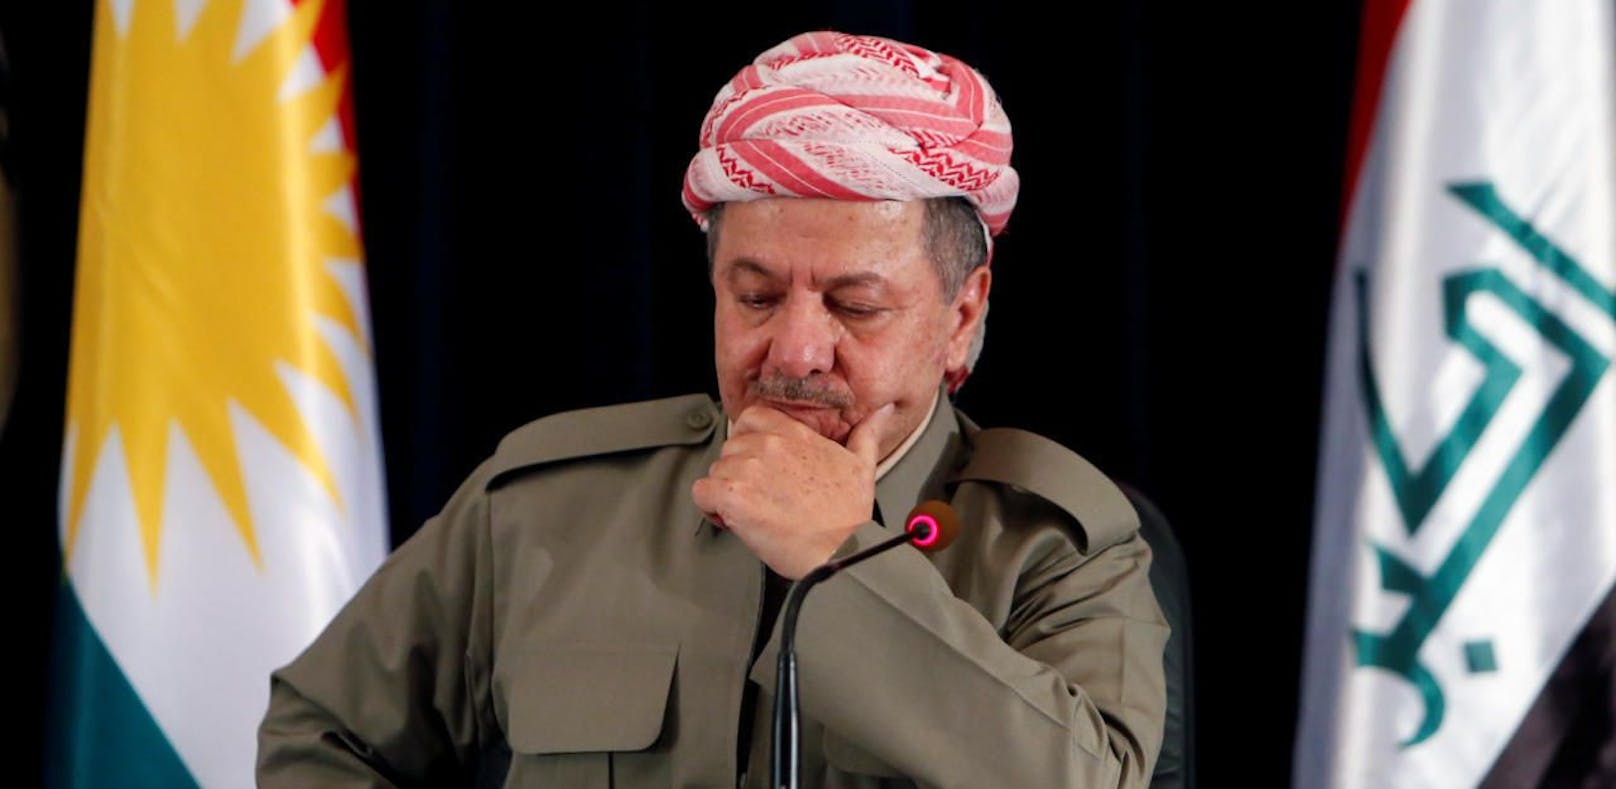 Folgt den immer lauter werdenden Rufen nach seinem Rücktritt: Der irakische Kurdenführer Massud Barsani. 